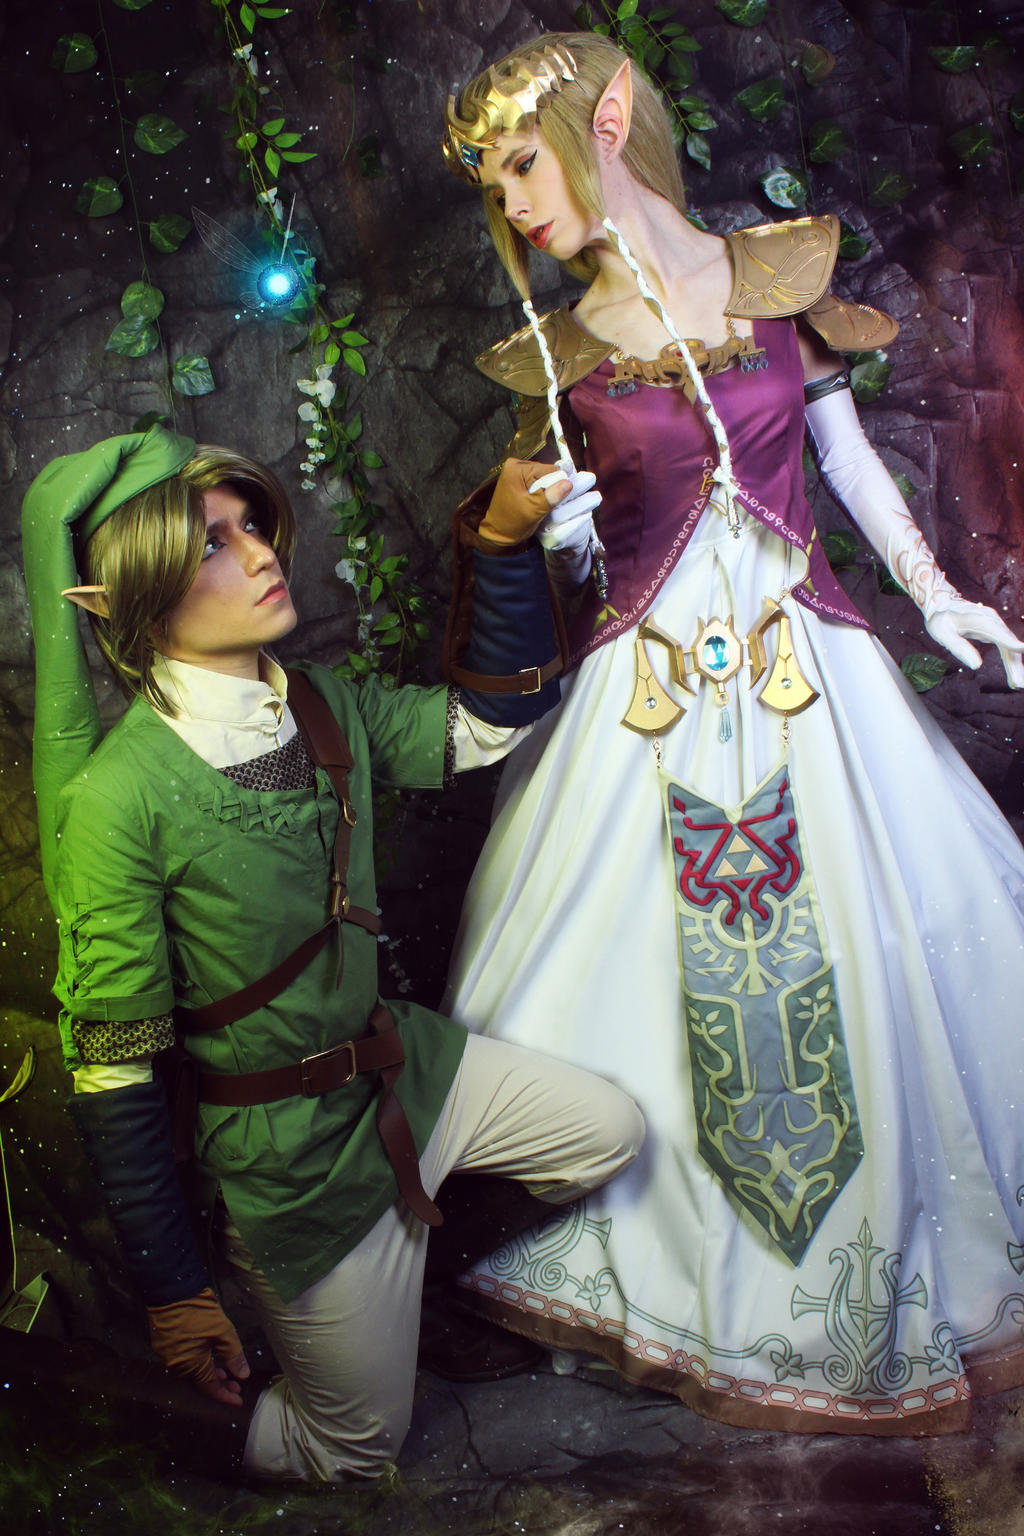 Puppet Zelda Cosplay from Legend of Zelda Twilight Princess [pic]